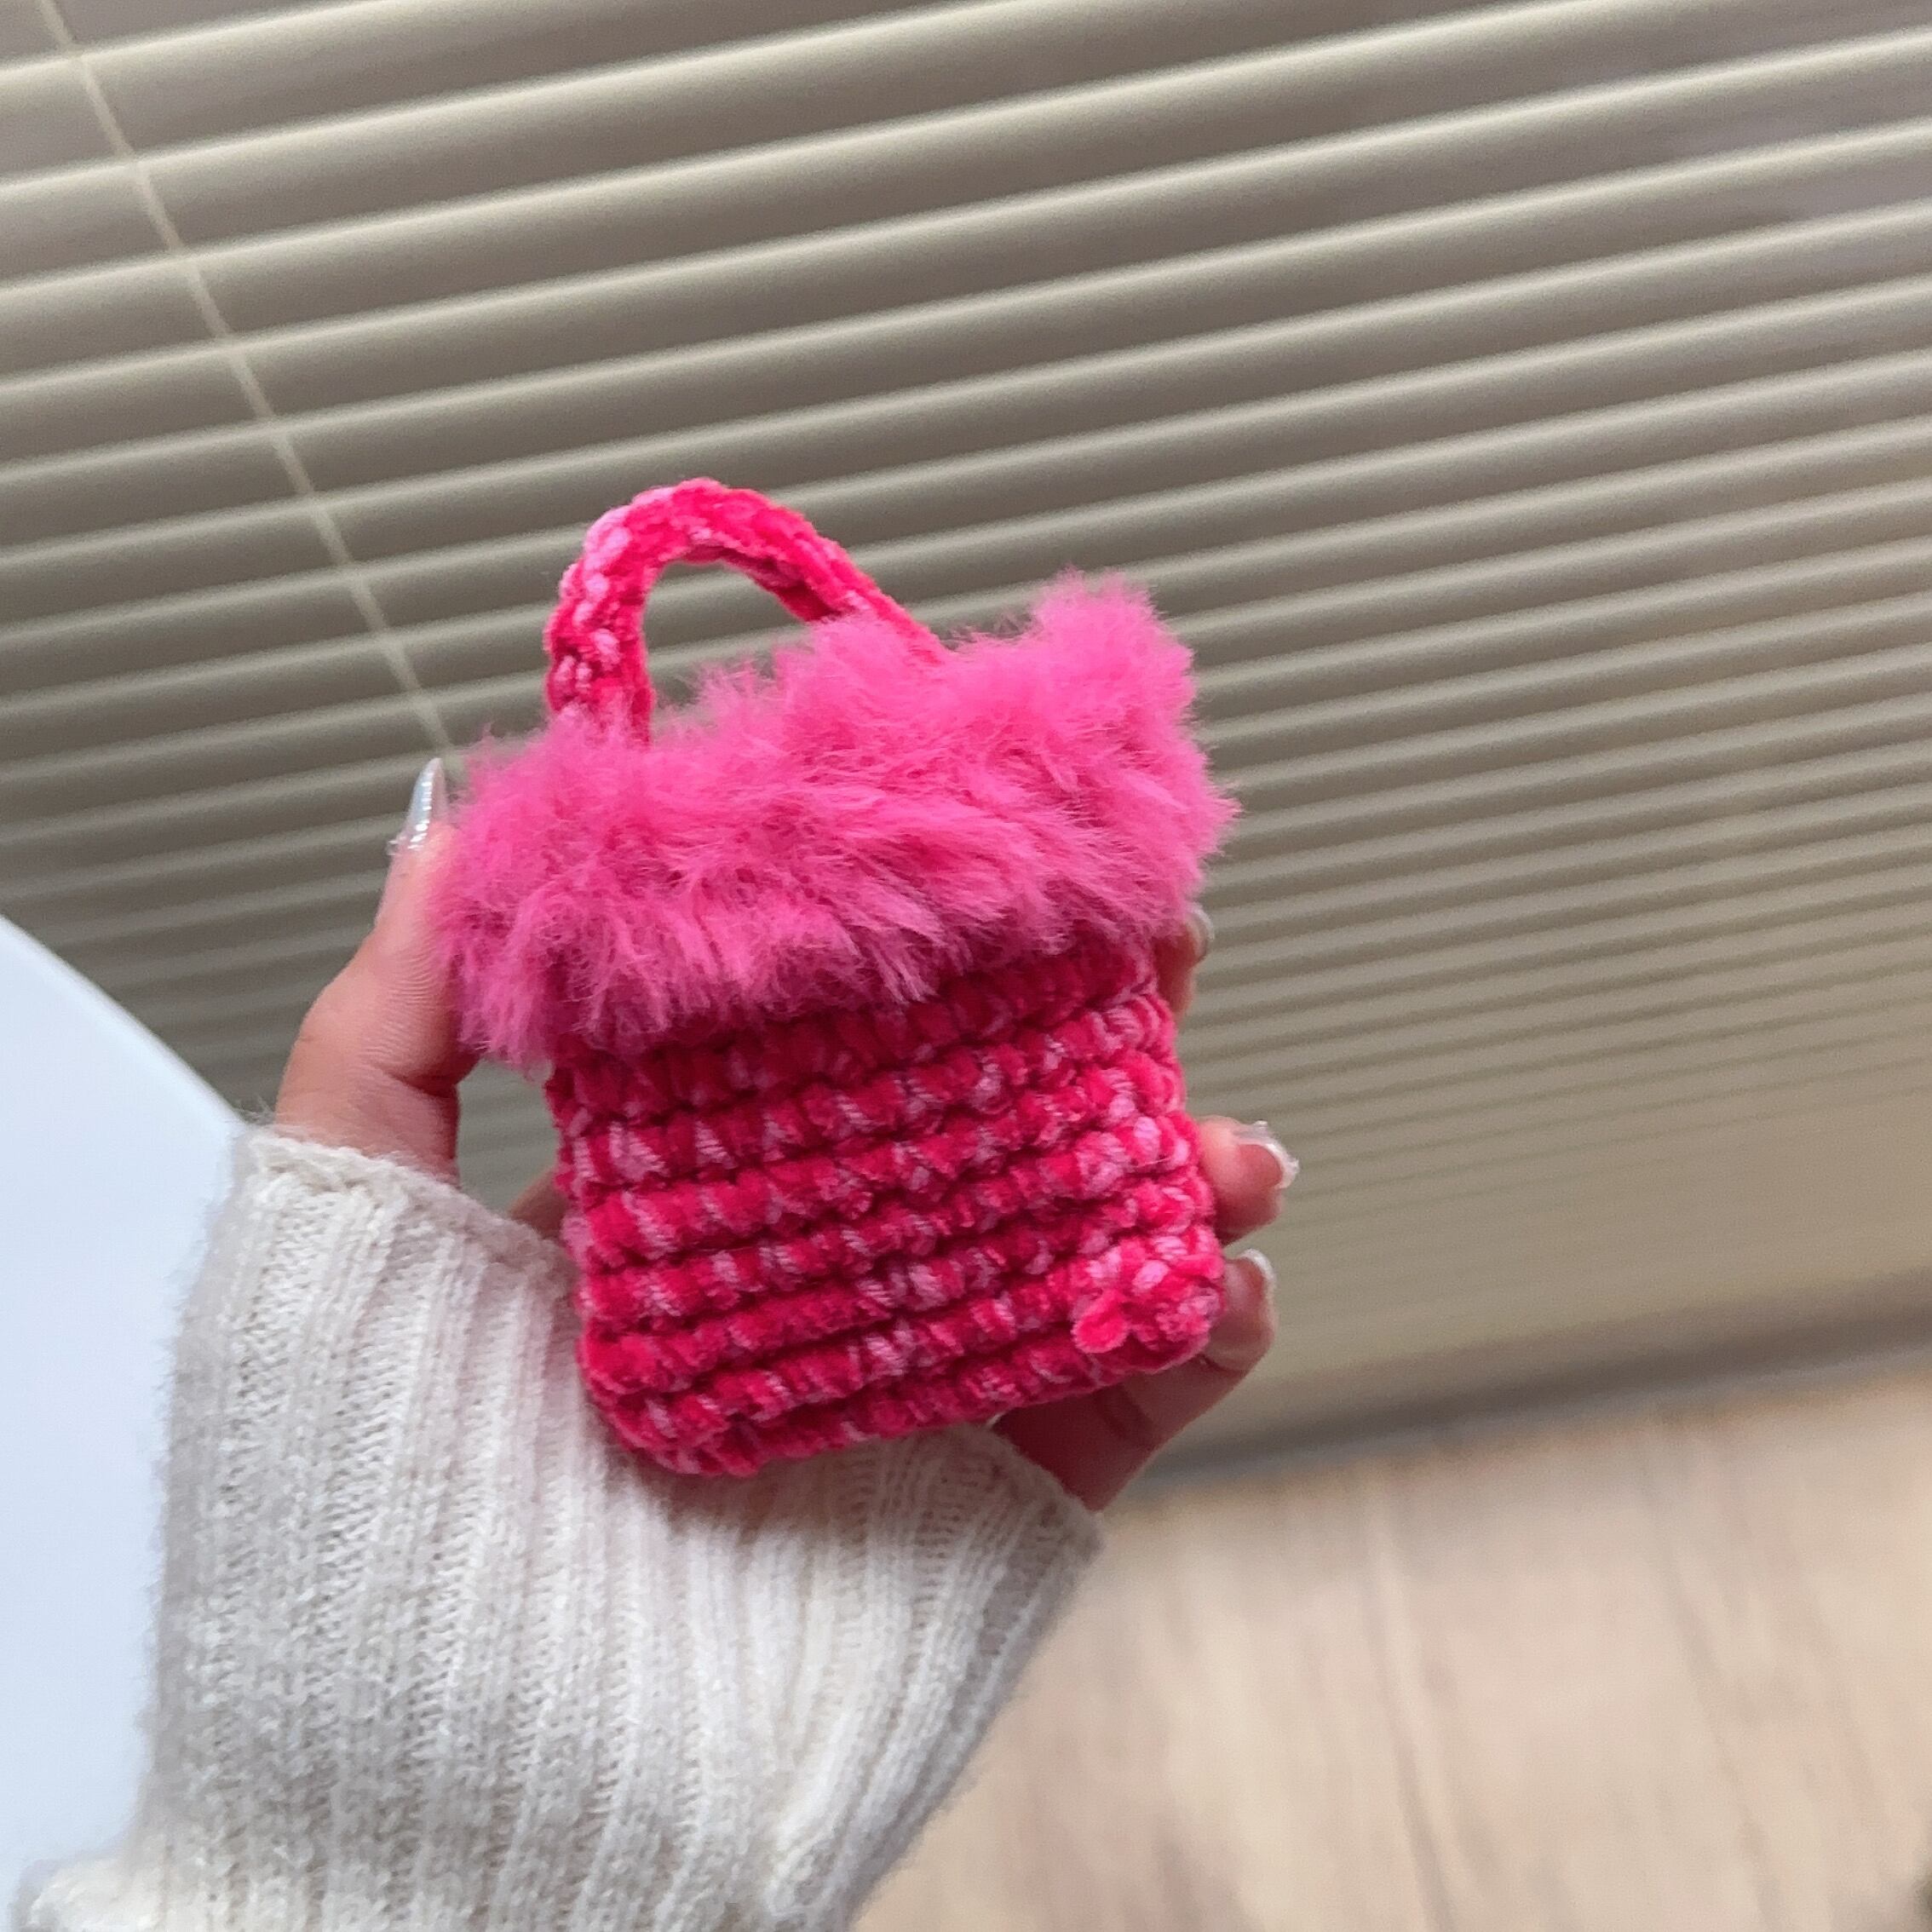 ハンドメイド AirPodsケース 編み物 小物入れミニポーチ - 財布